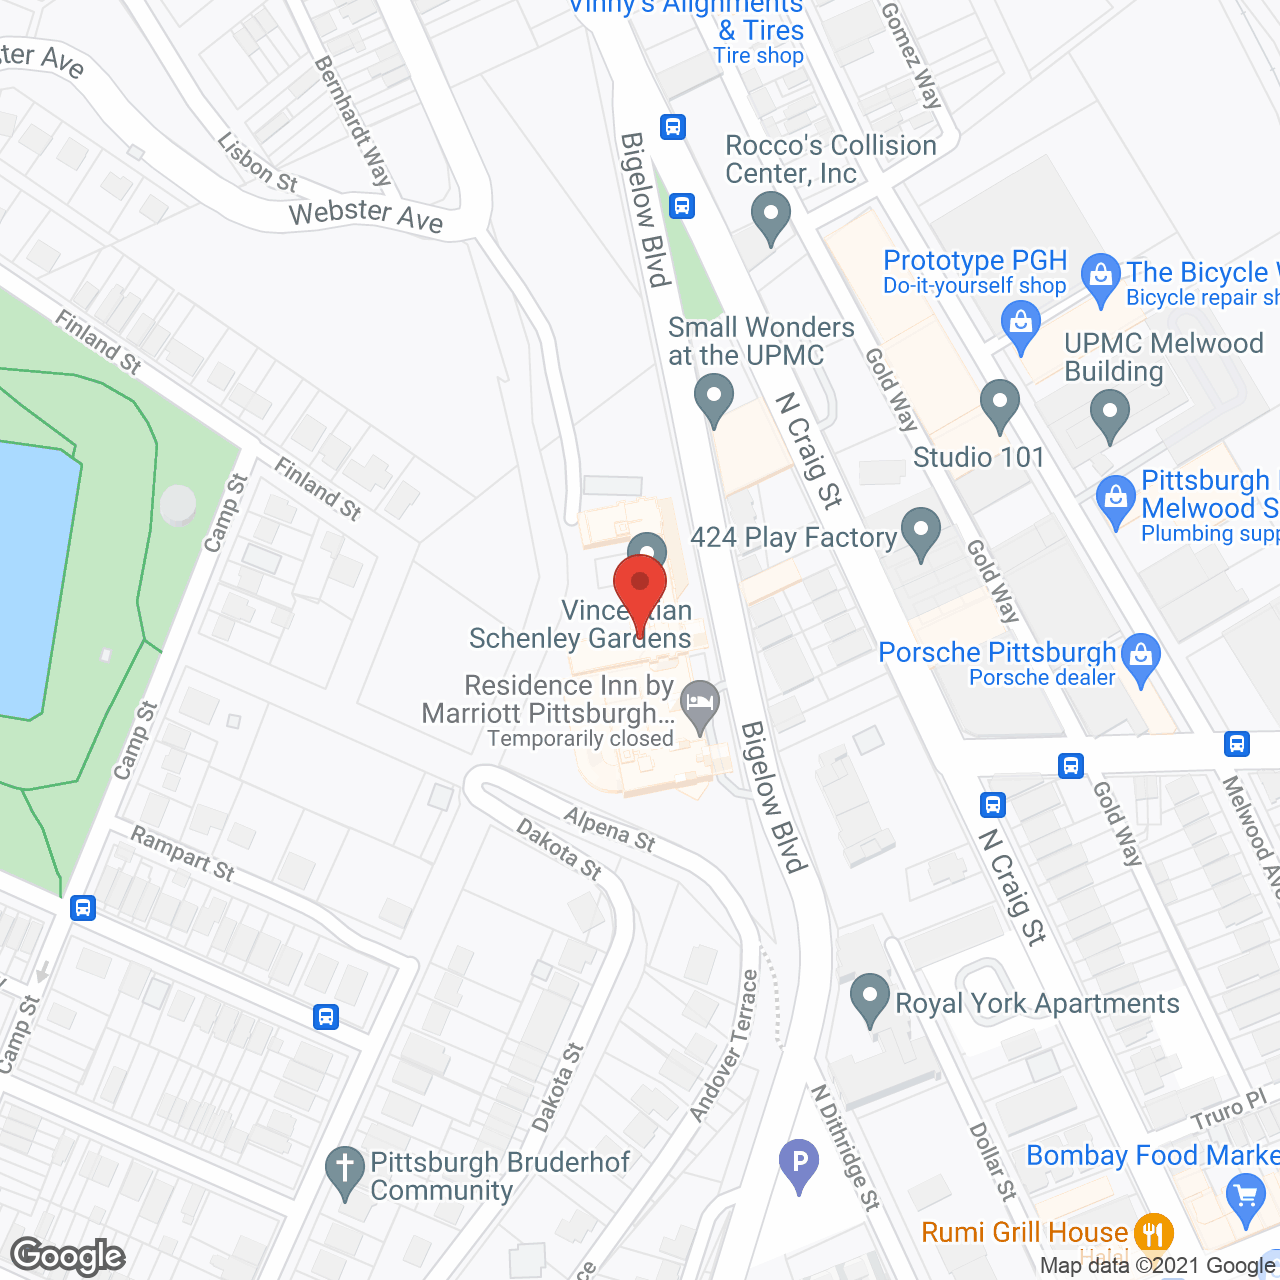 Schenley Gardens in google map